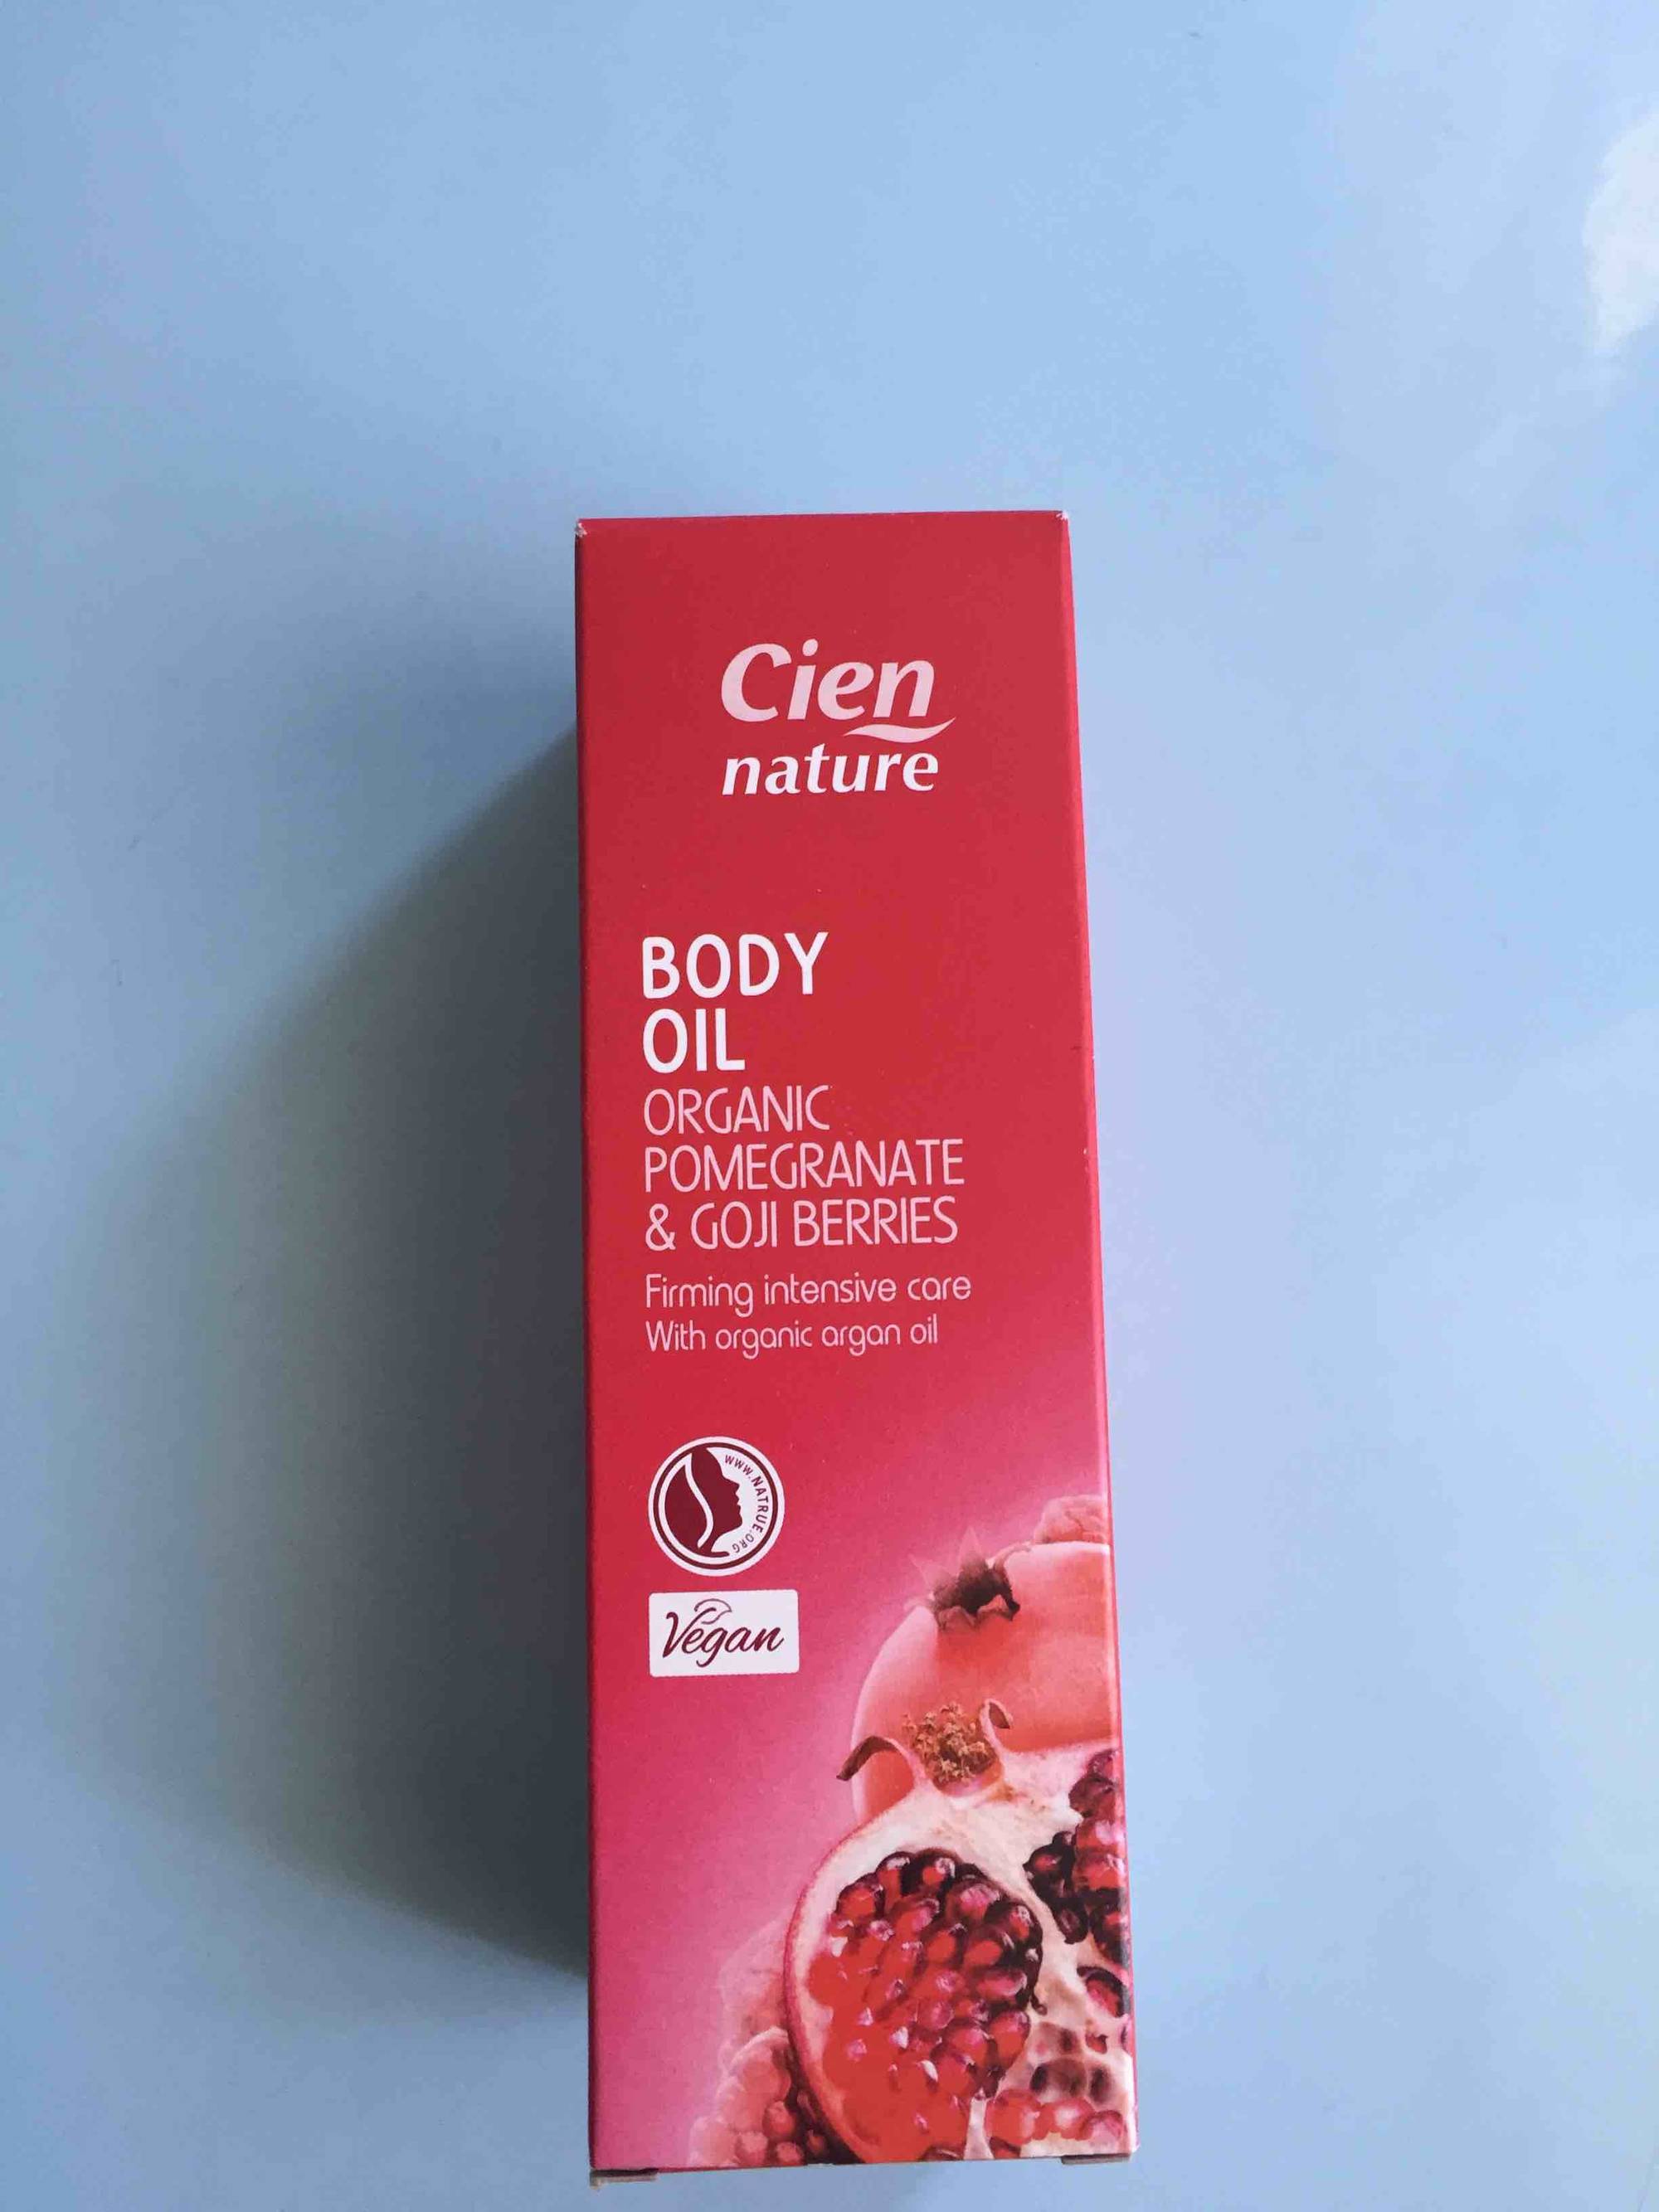 CIEN - Nature - Body oil organic pomegranate & goji berries